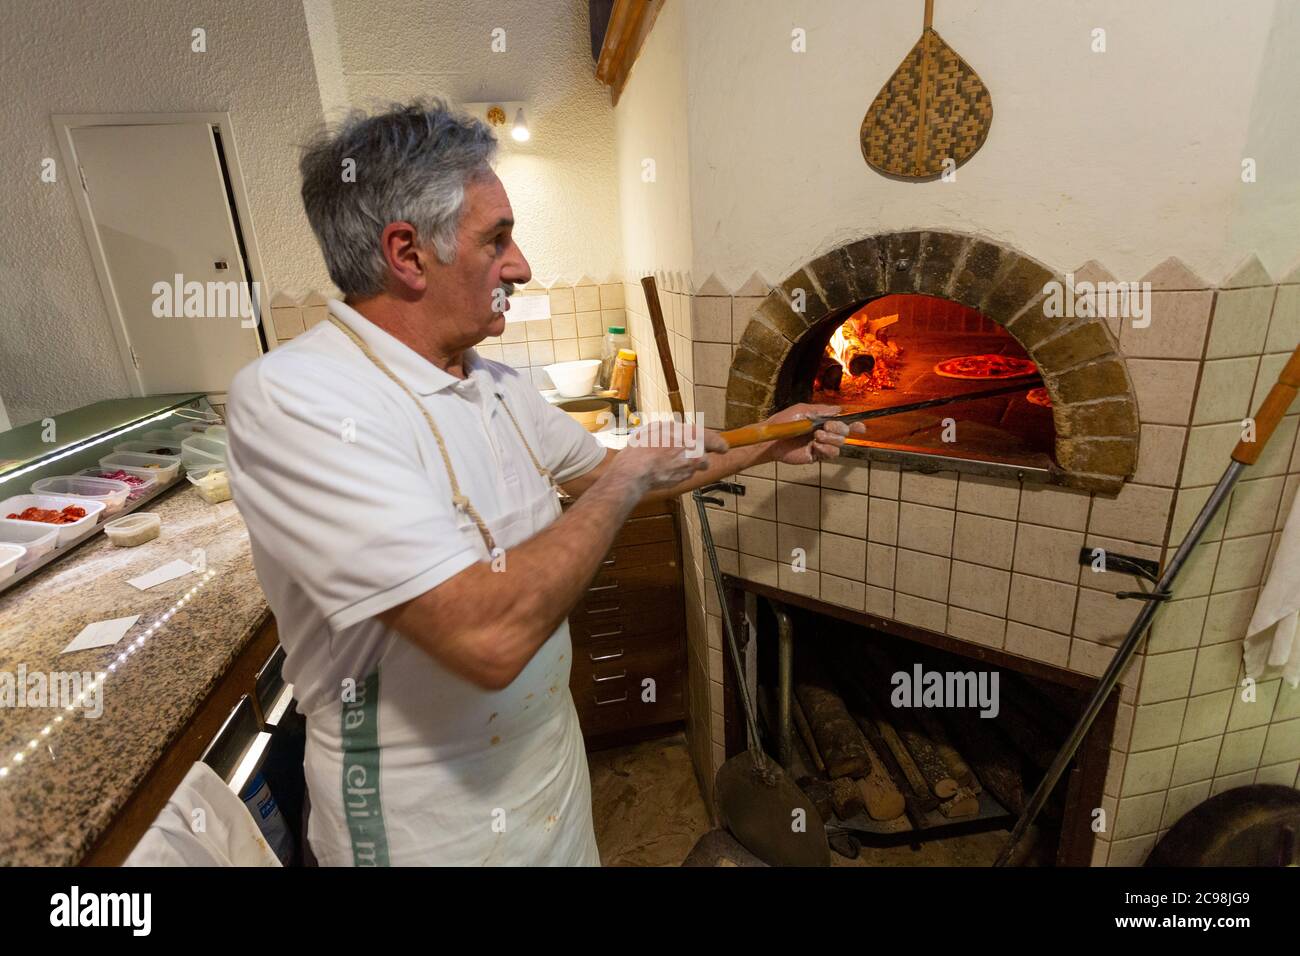 Ein italienischer Koch arbeitet in einem Holzofen in einem Restaurant in  Borgo San Lorenzo, Italien Stockfotografie - Alamy